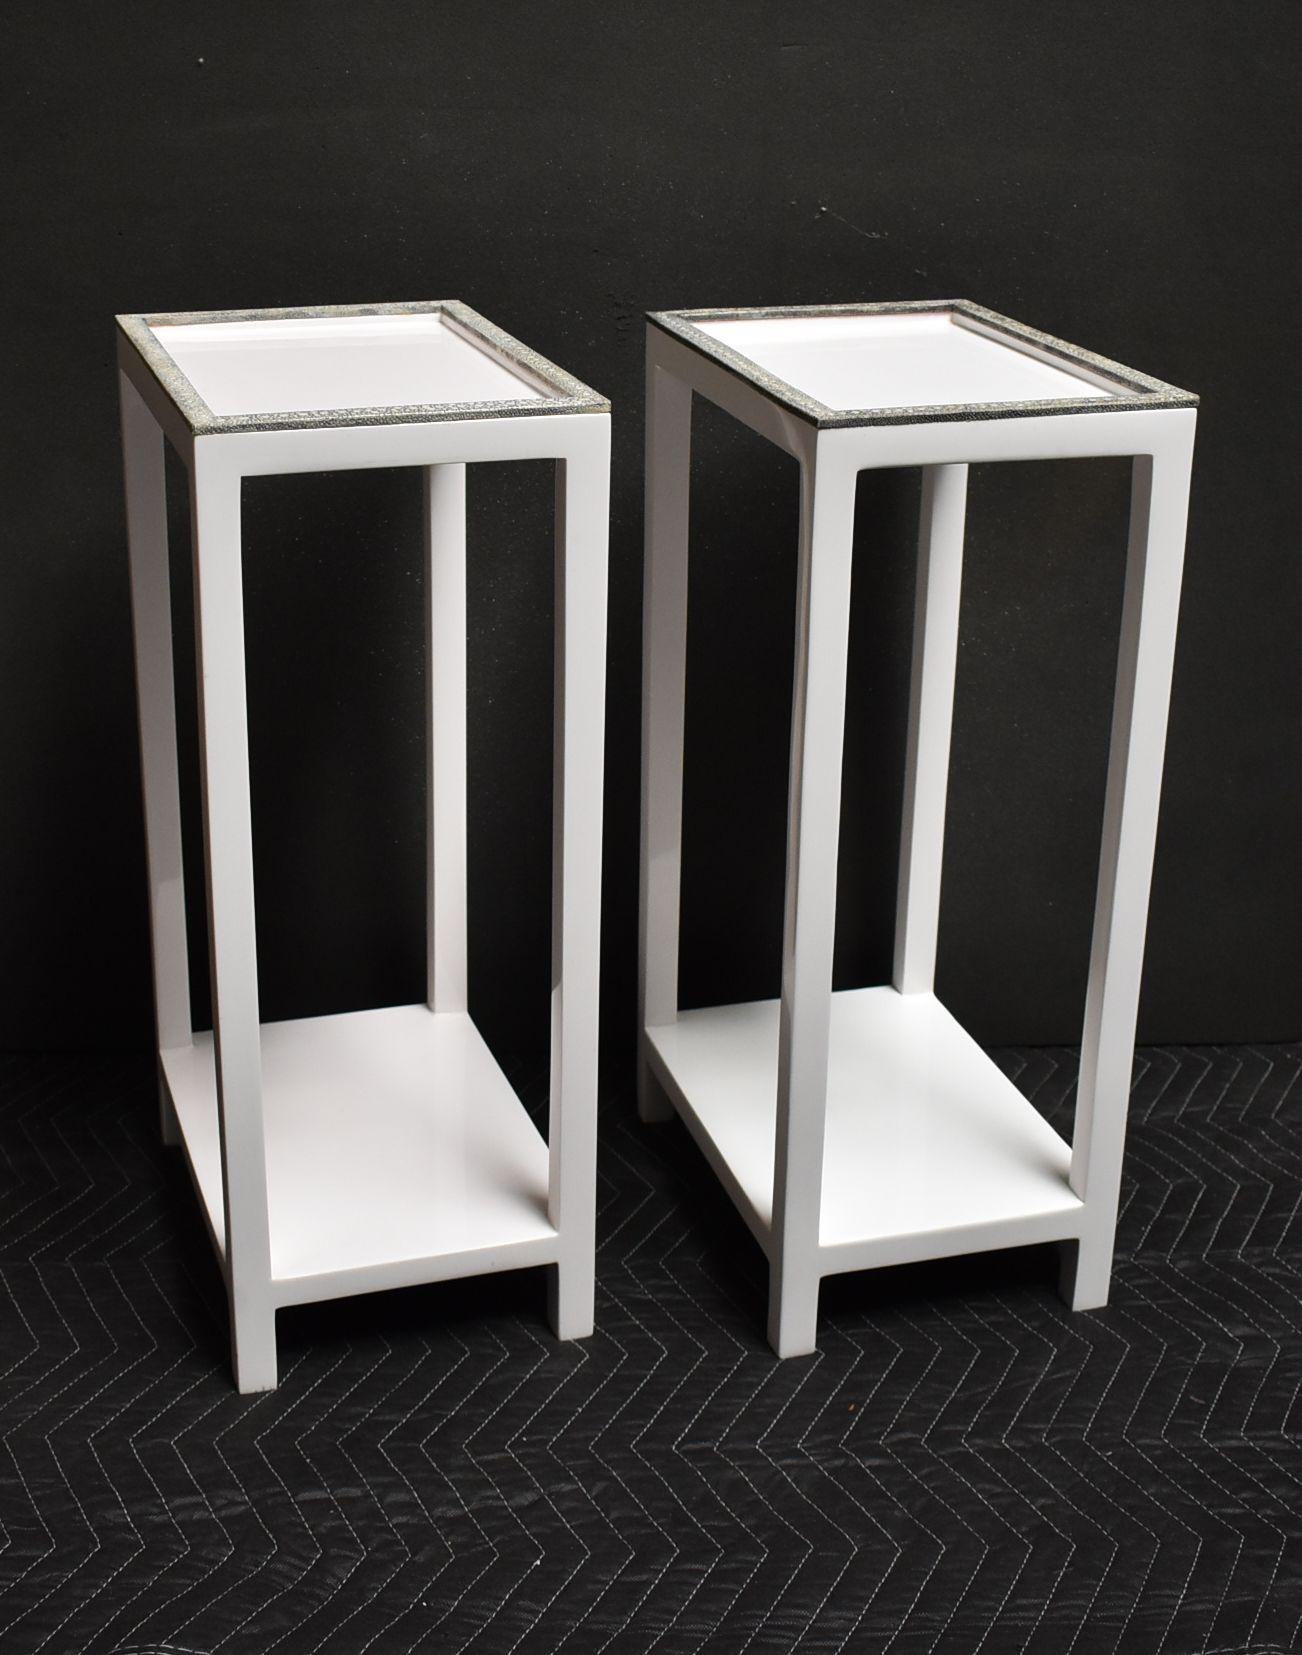 Paire de tables d'appoint à deux niveaux en résine blanche avec bordure en galuchat gris et blanc.